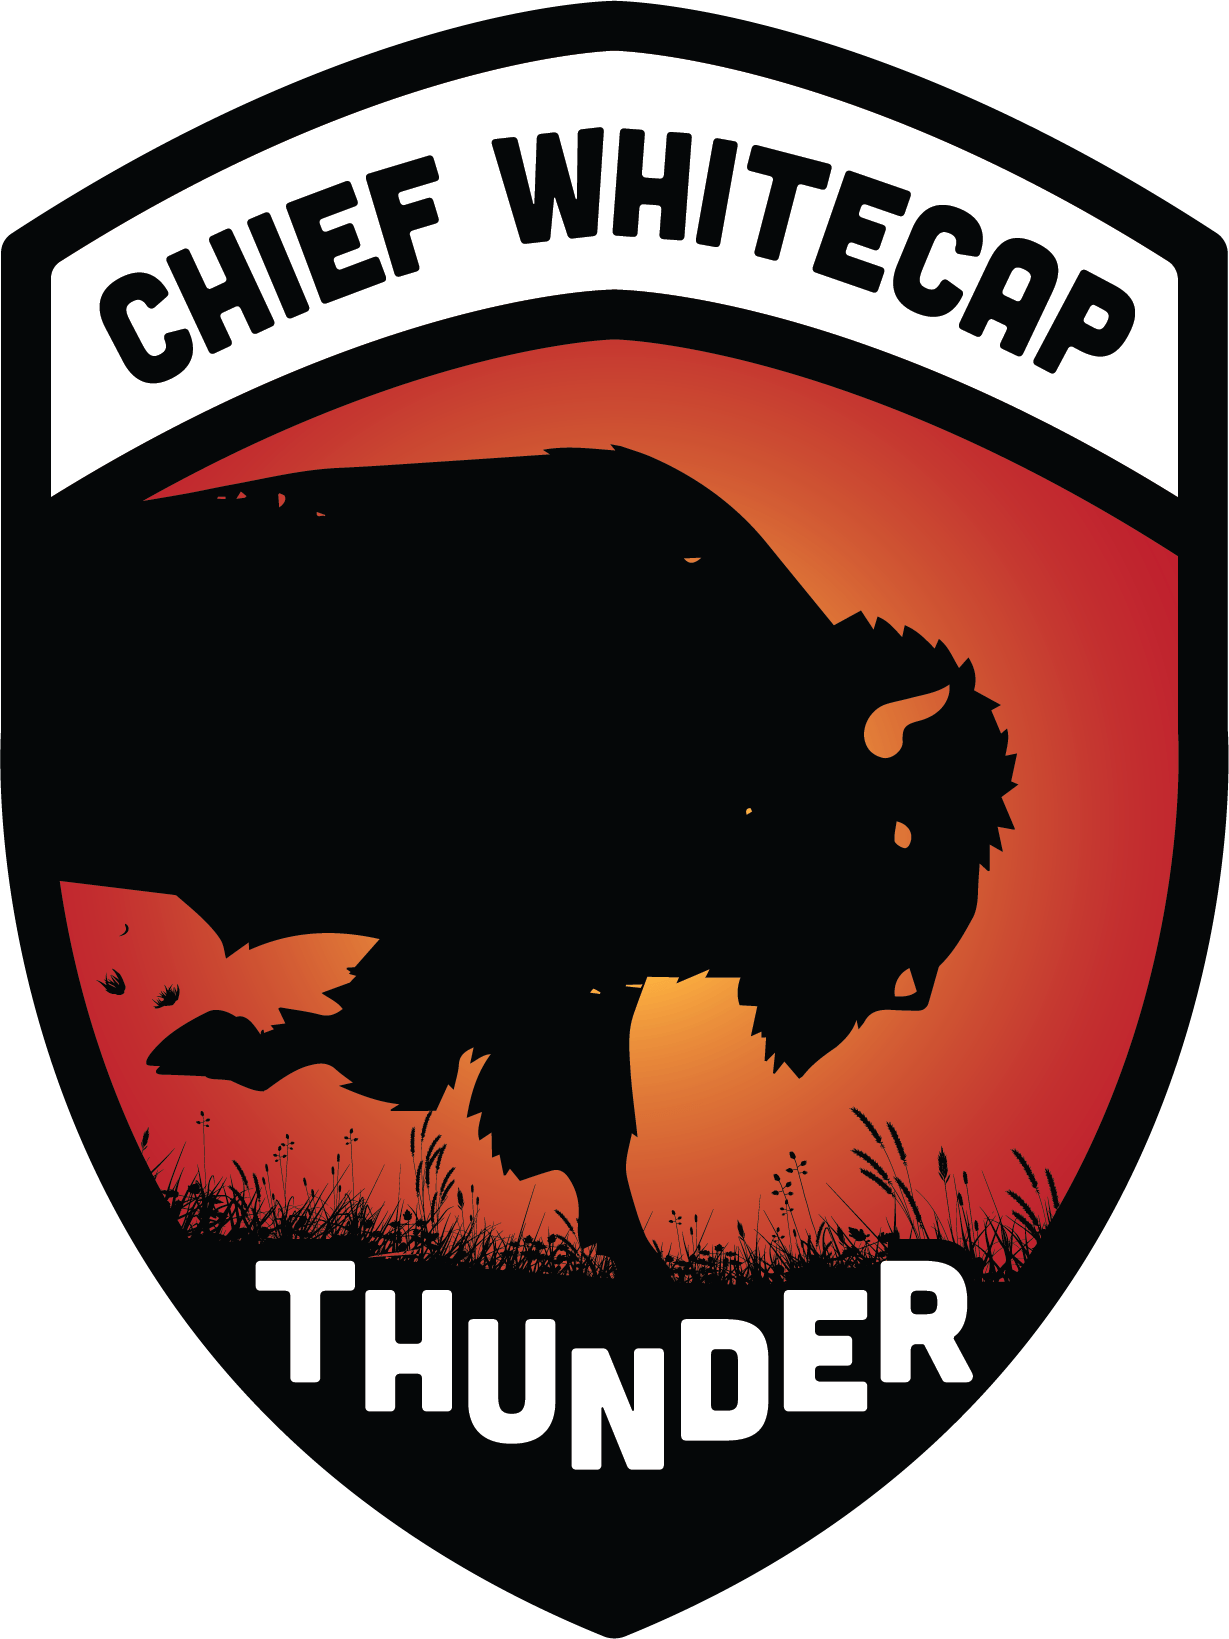 White Cap Logo - Chief Whitecap School - Chief Whitecap School